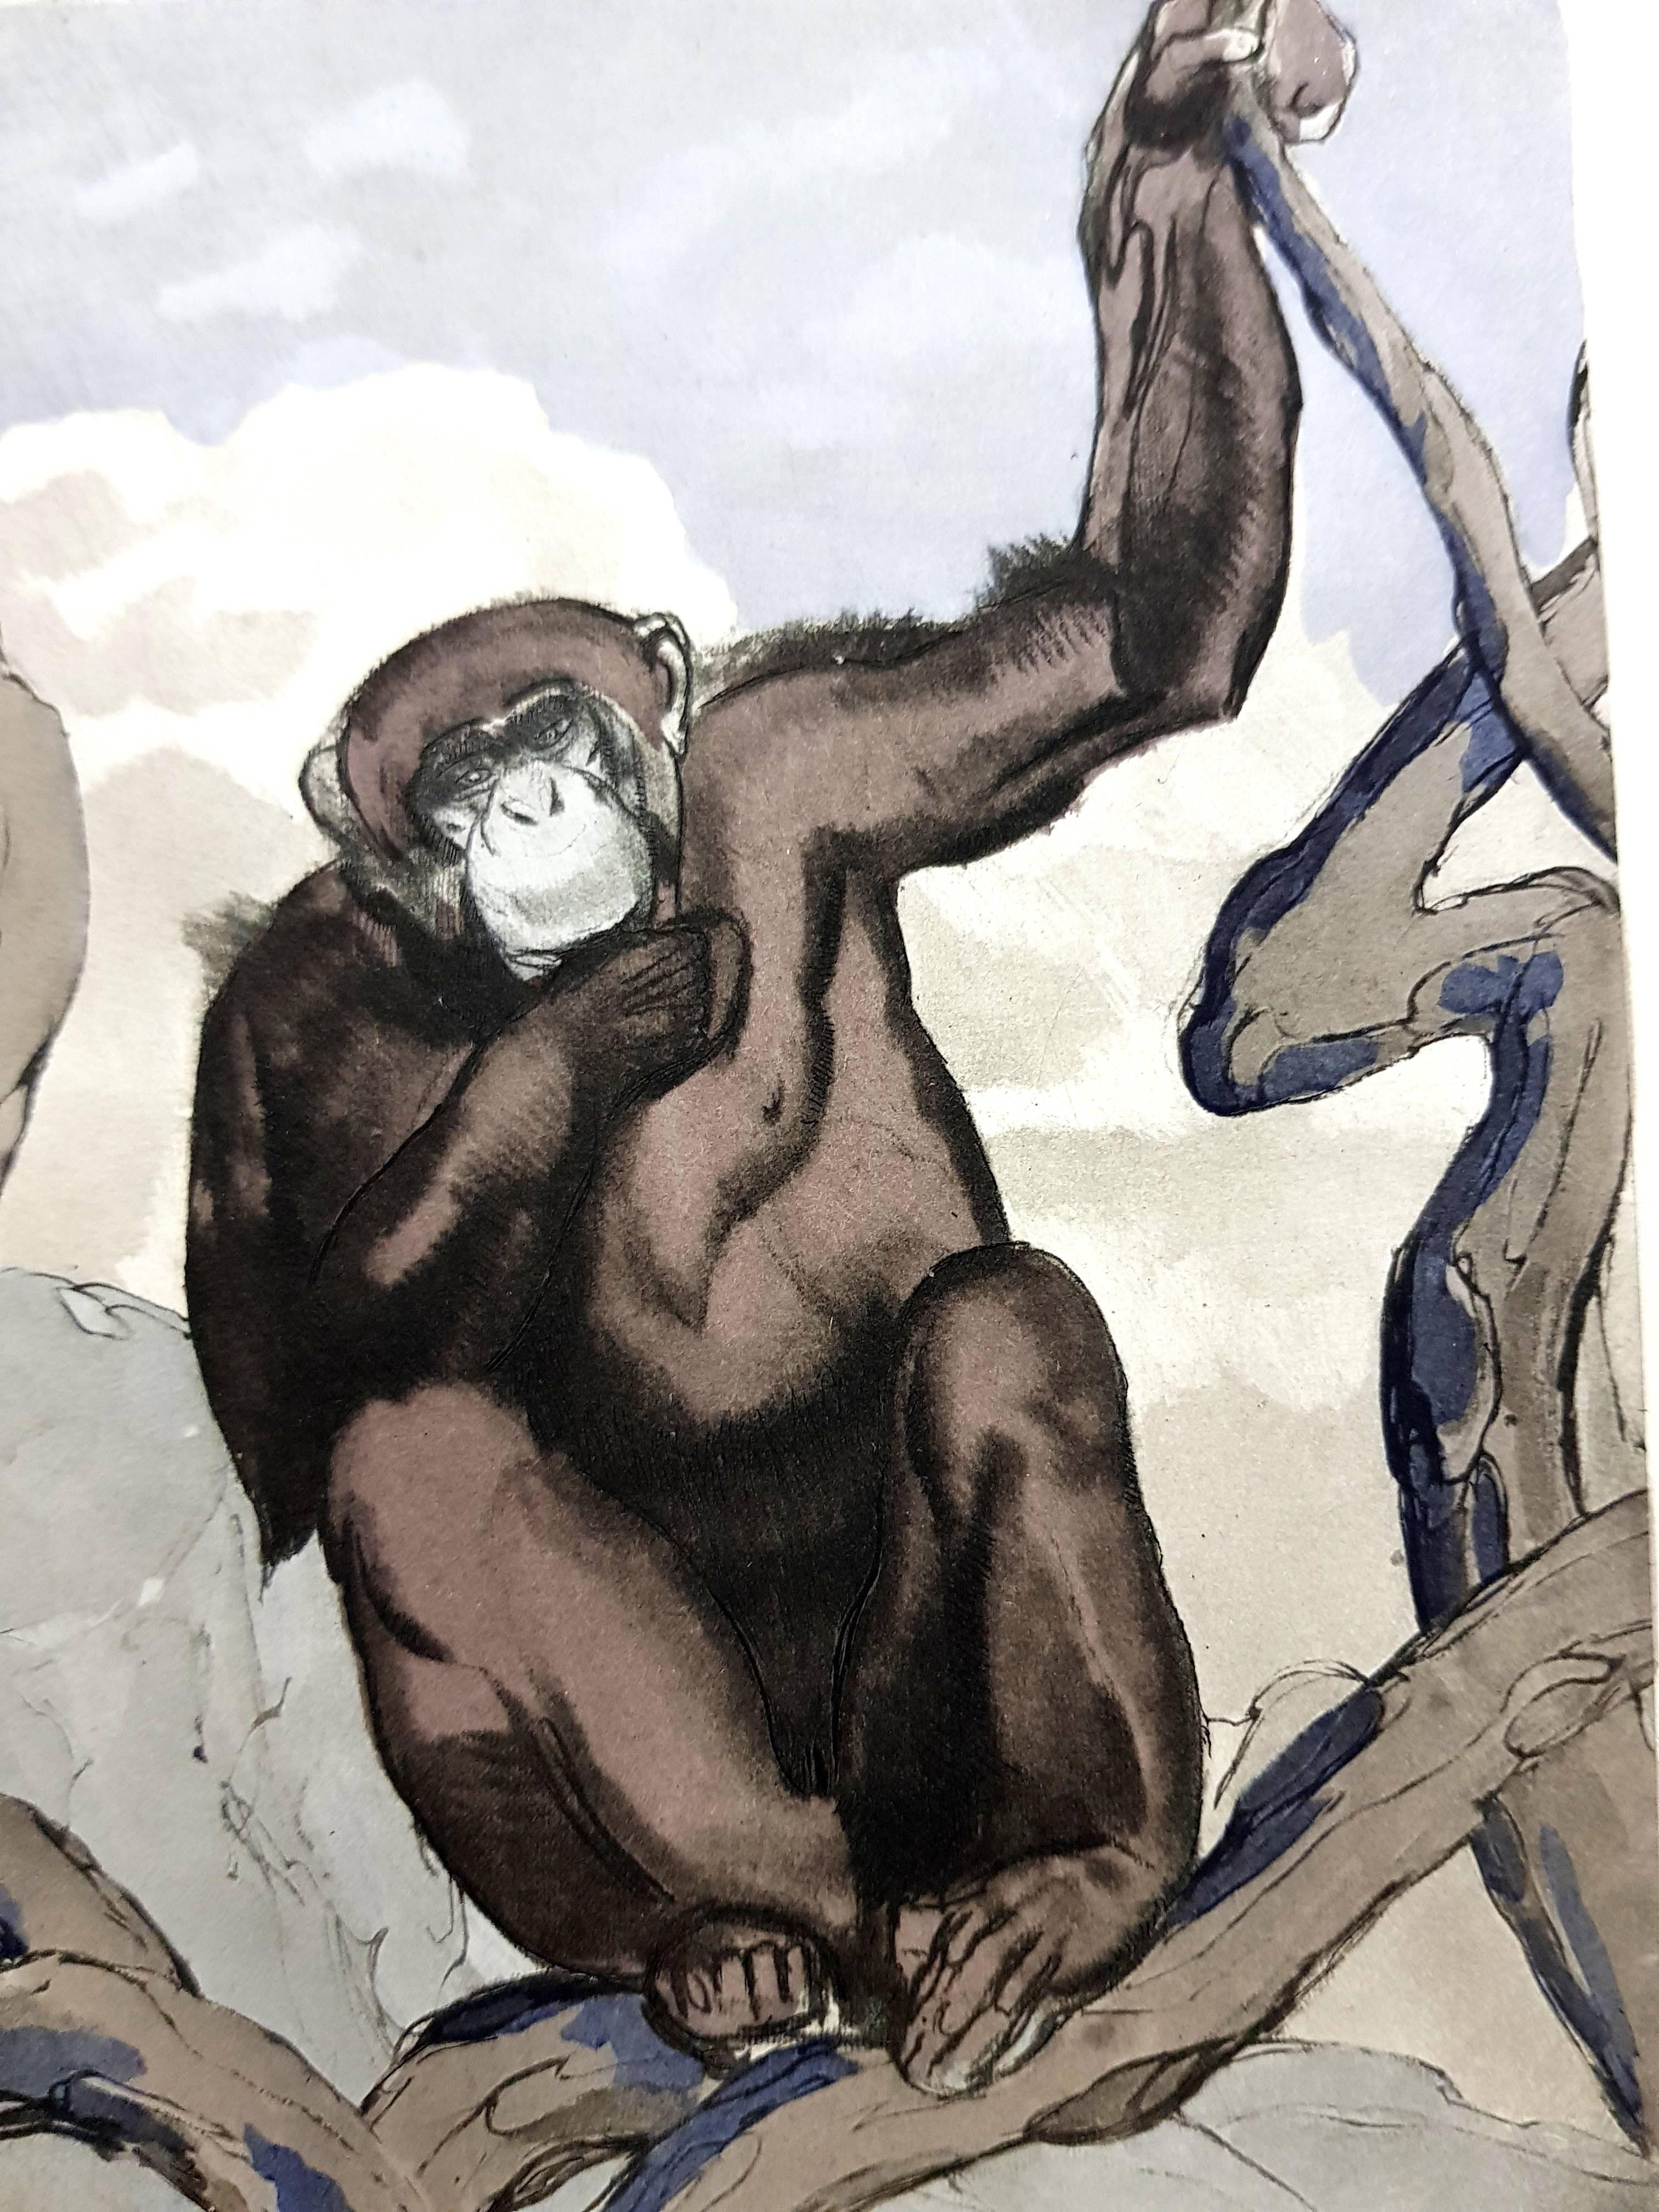 Paul Jouve - Chimpanzee - Original Engraving - Print by Pierre-Paul Jouve